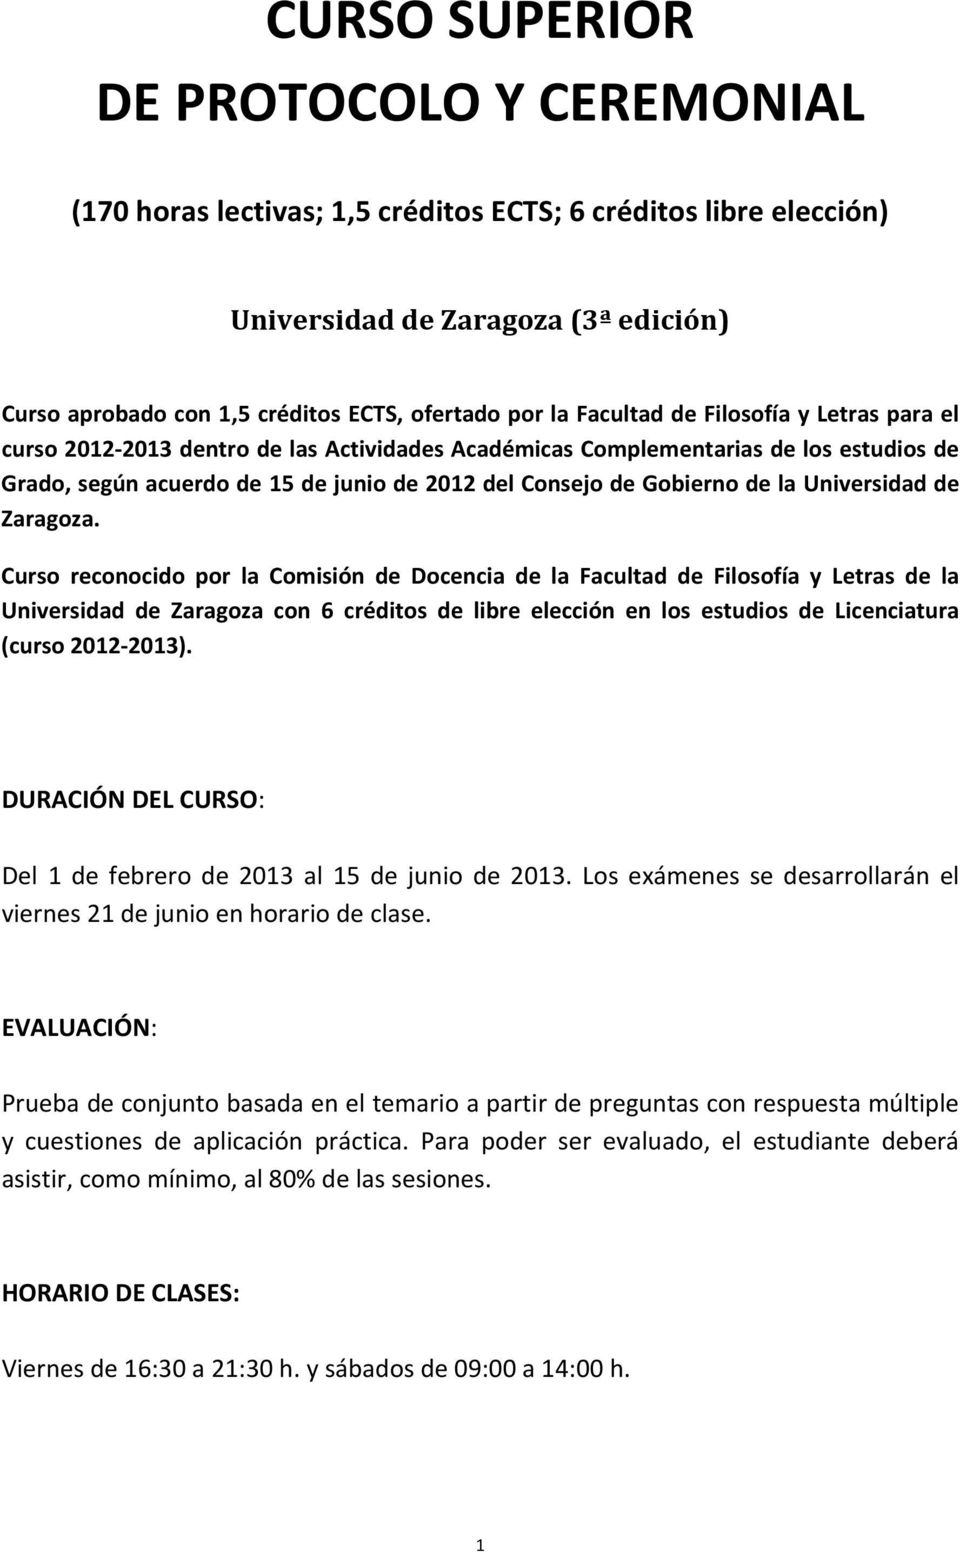 la Universidad de Zaragoza.